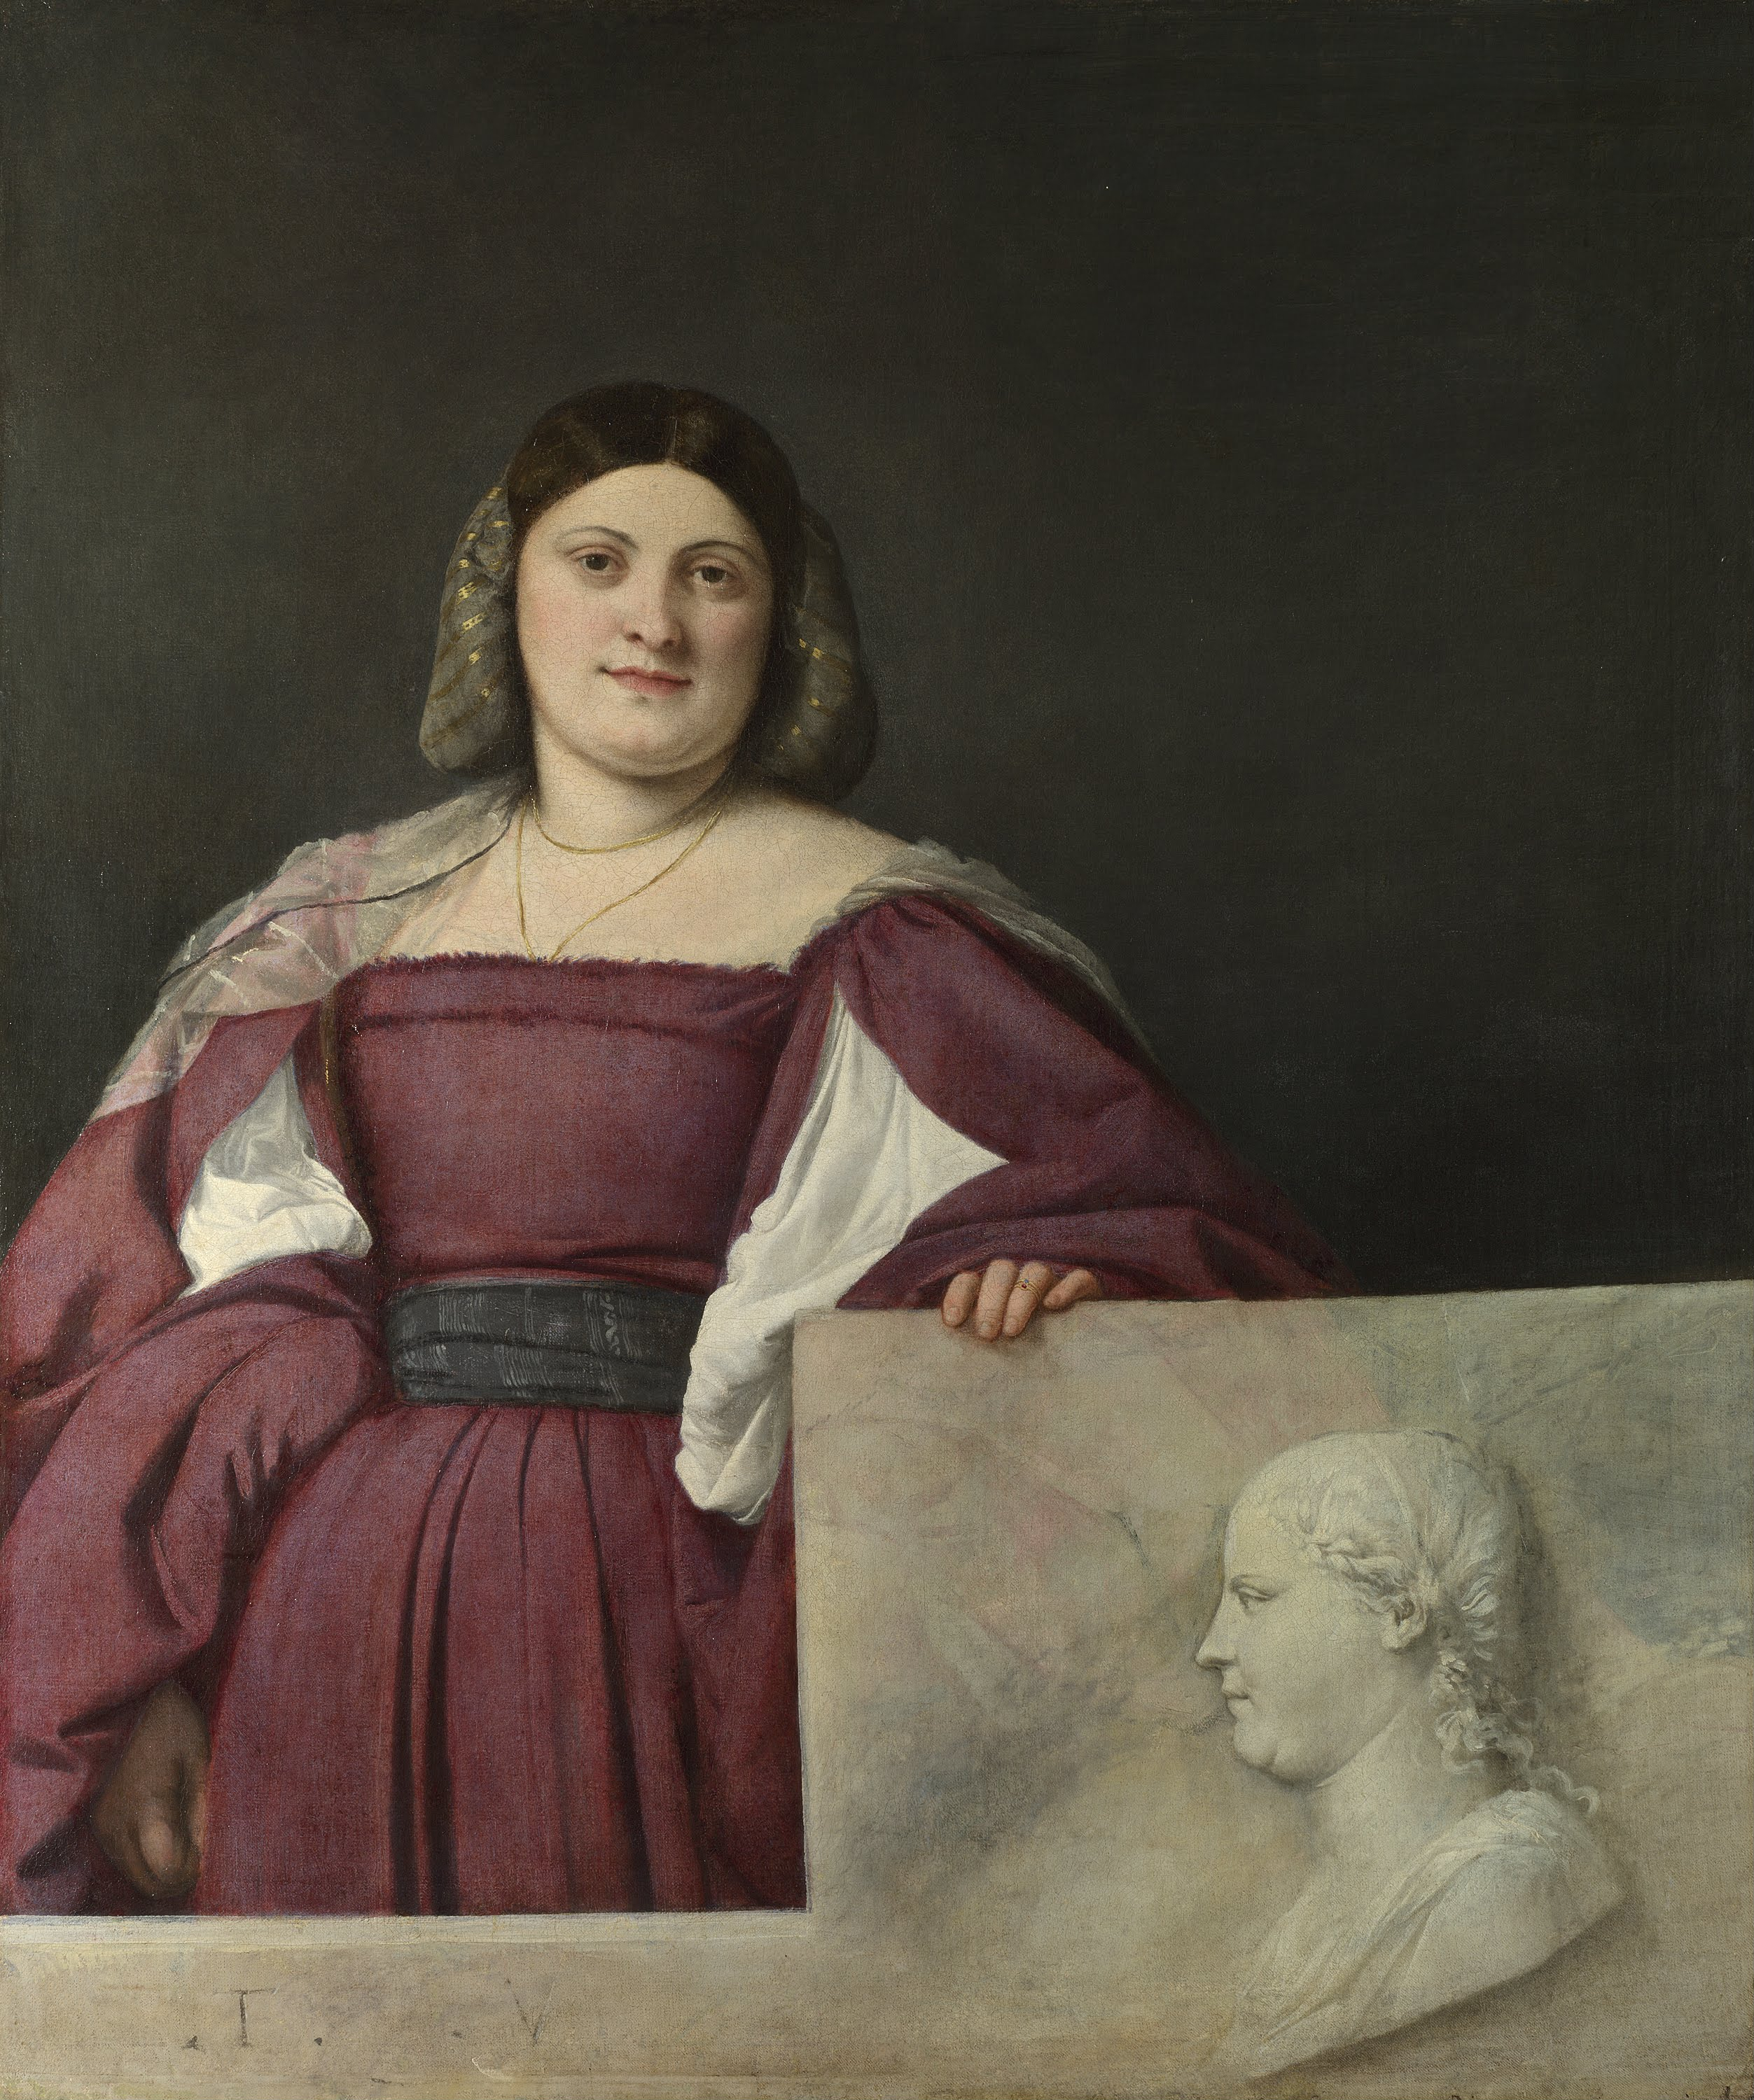 Retrato de una Dama ('La Schiavona') by  Tiziano - about 1510-12 - 119.4 x 96.5 cm Galería Nacional